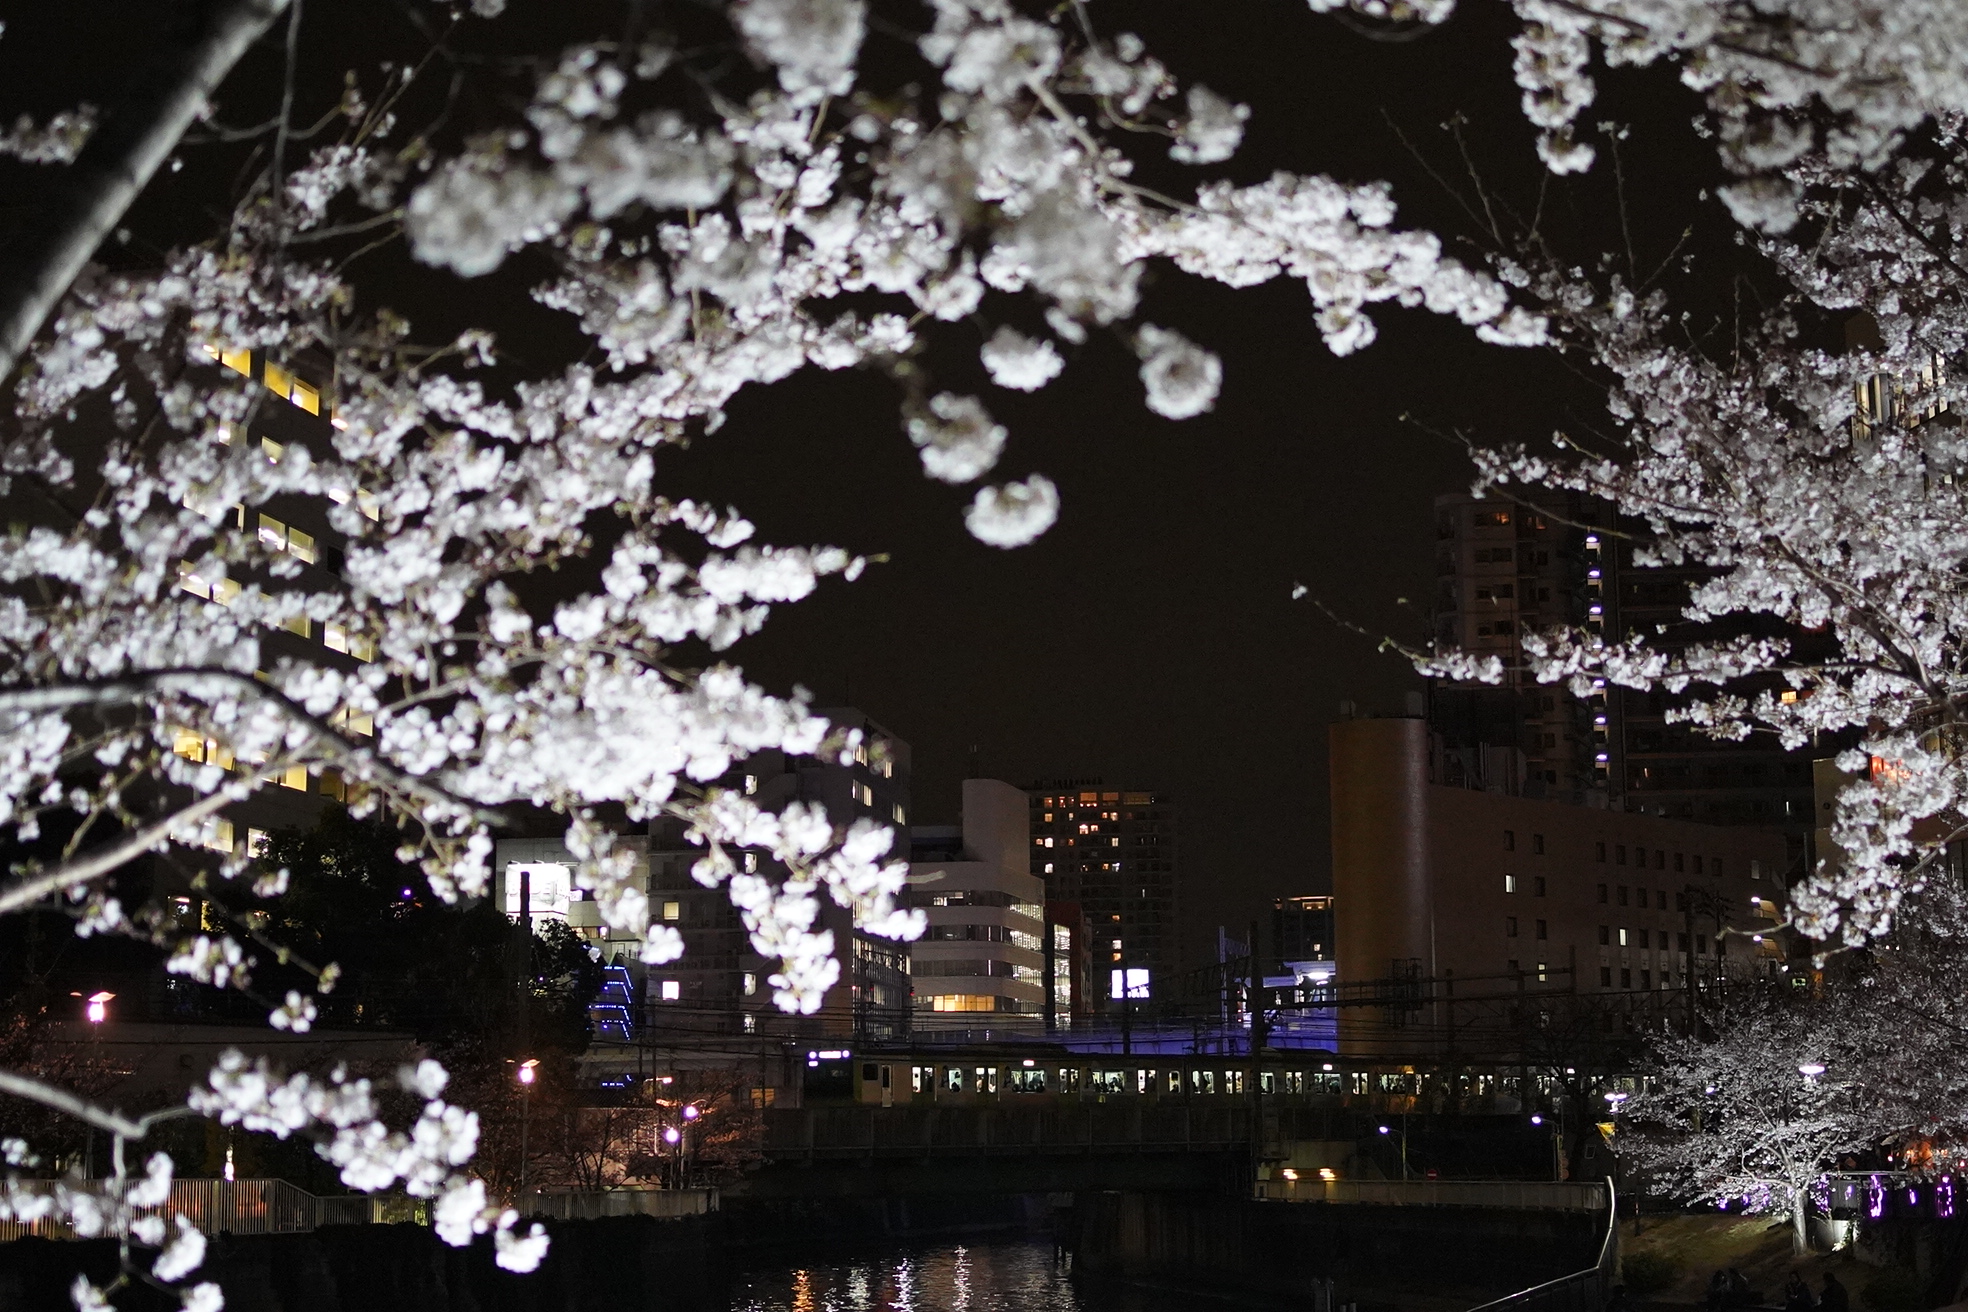 19 4 1 鉄道レポート 山手線 五反田の目黒川の夜桜 ミラーレス高感度特性を最大限に生かした撮影